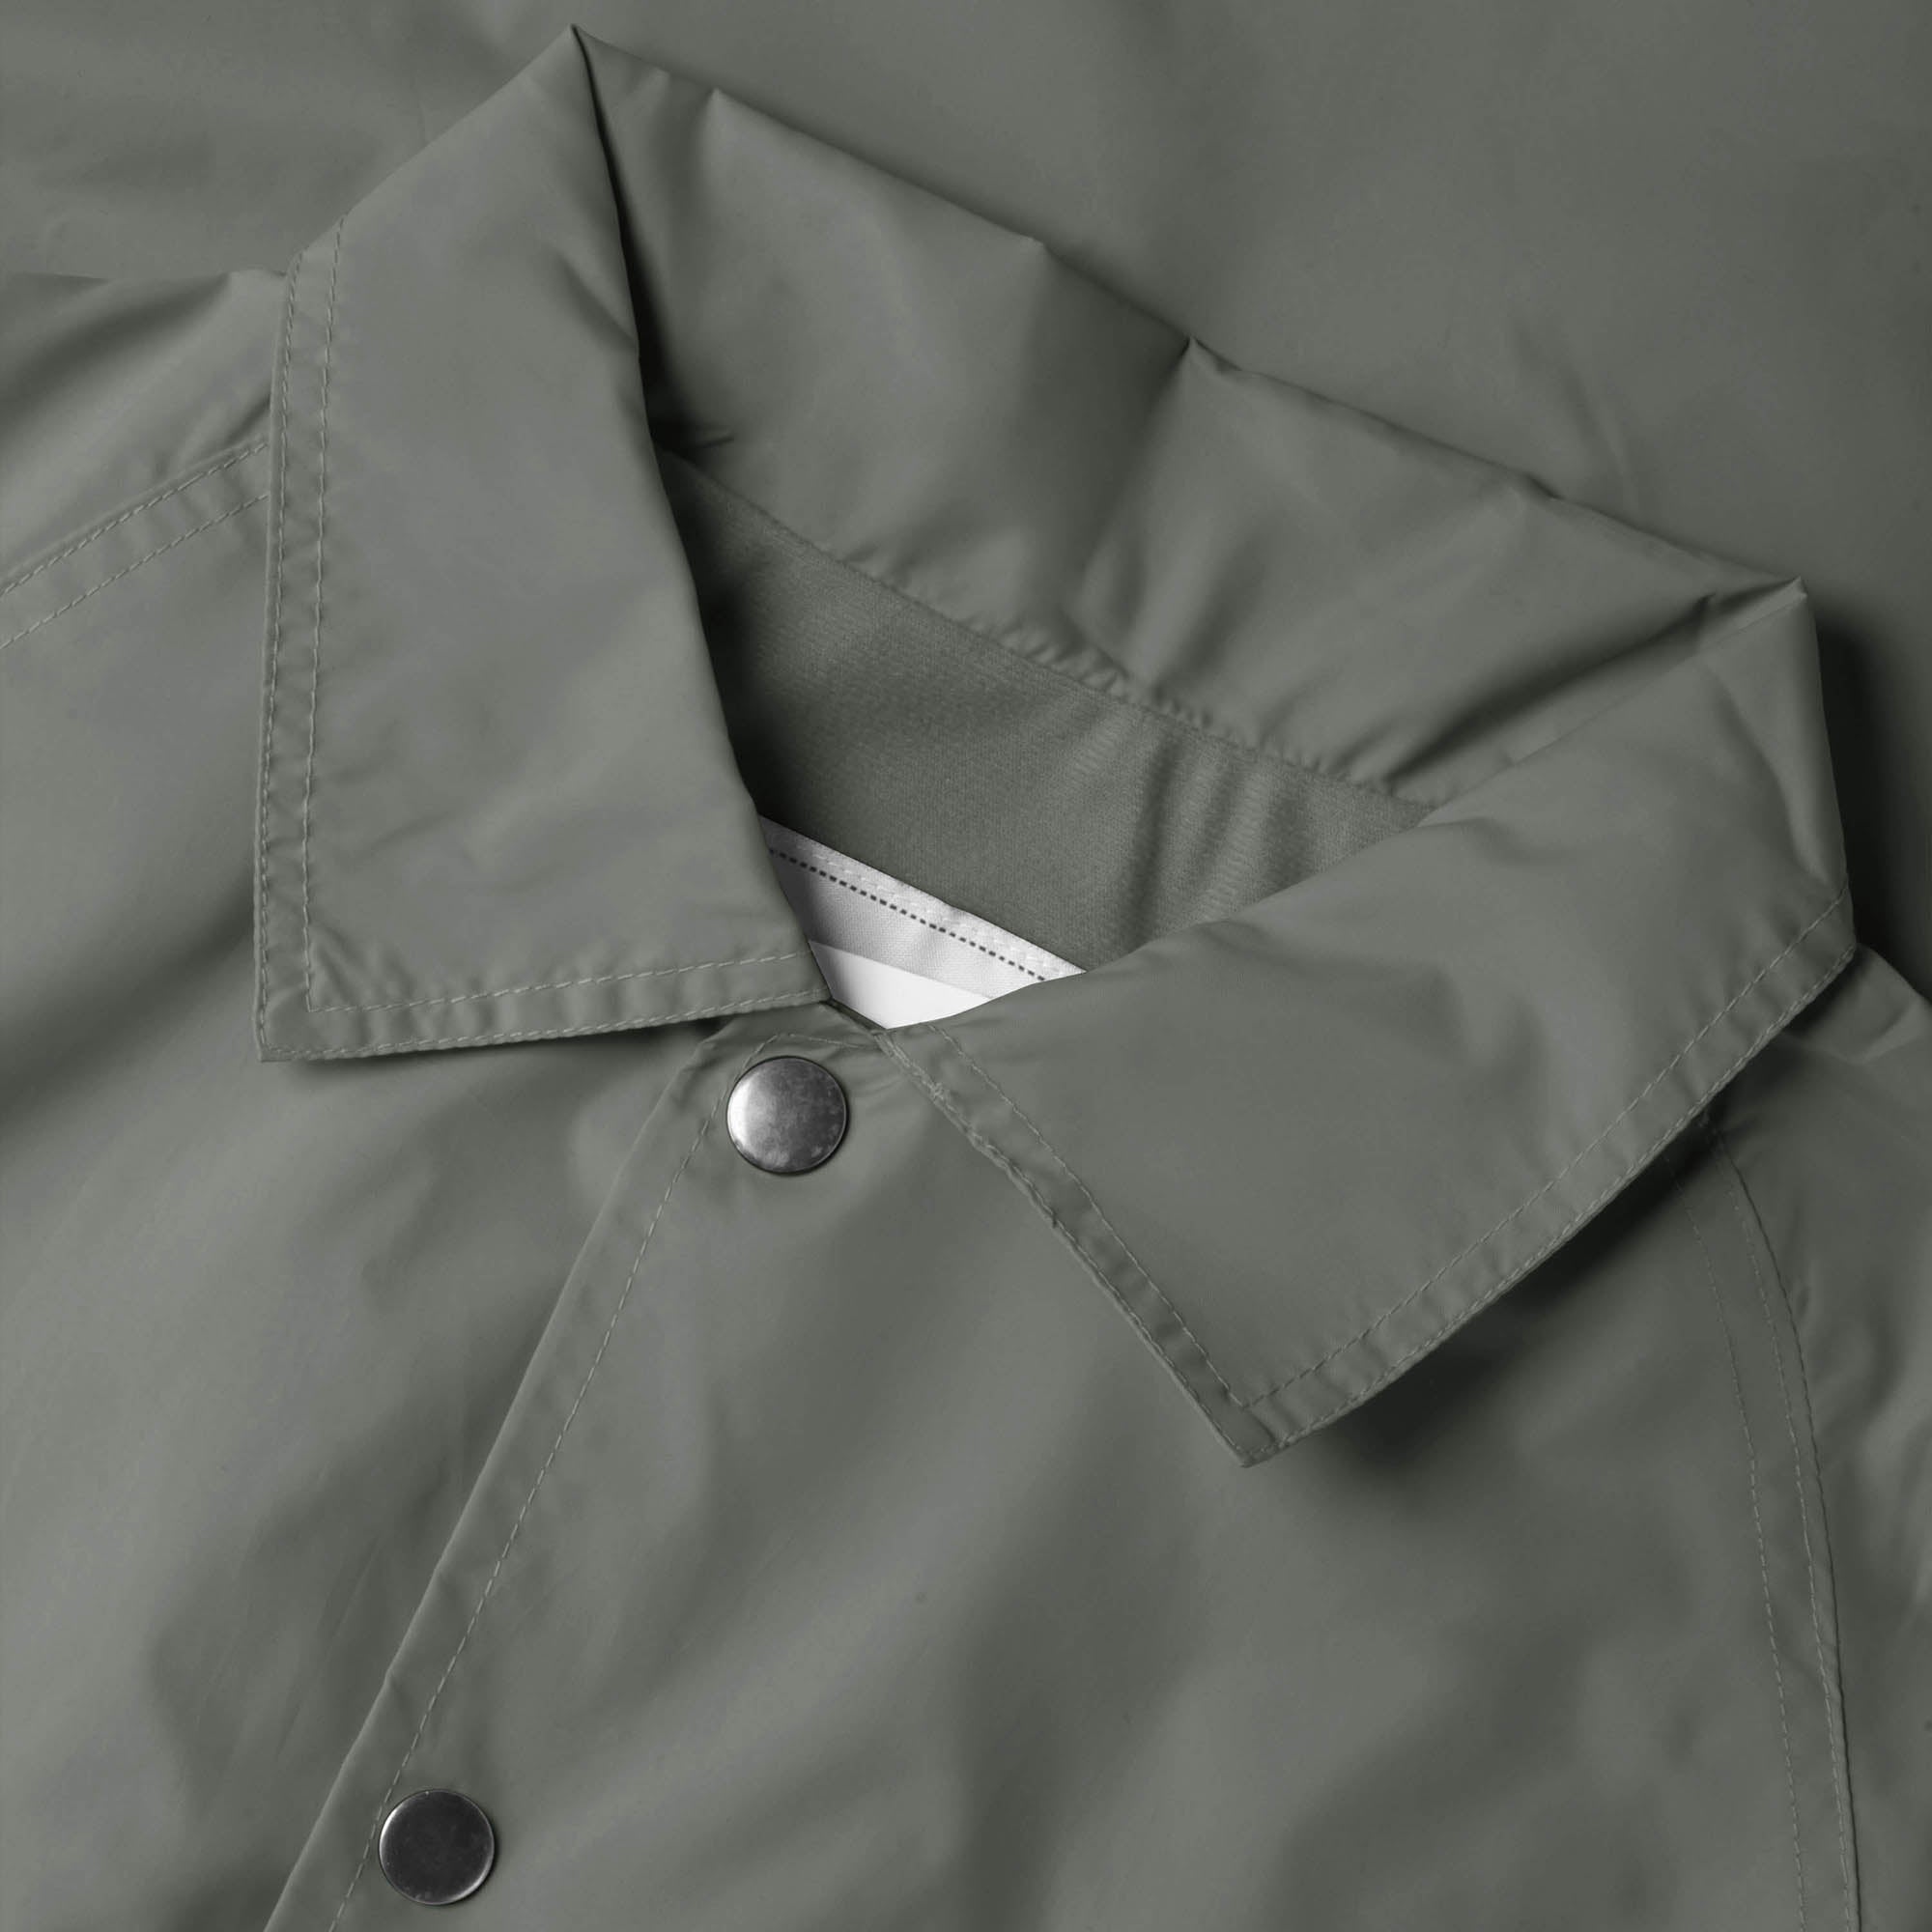 waterproof jacket_waterproofs_mens waterproof jacket_best rain jacket_lightweight waterproof jacket_water resistant jacket_Dark Gray